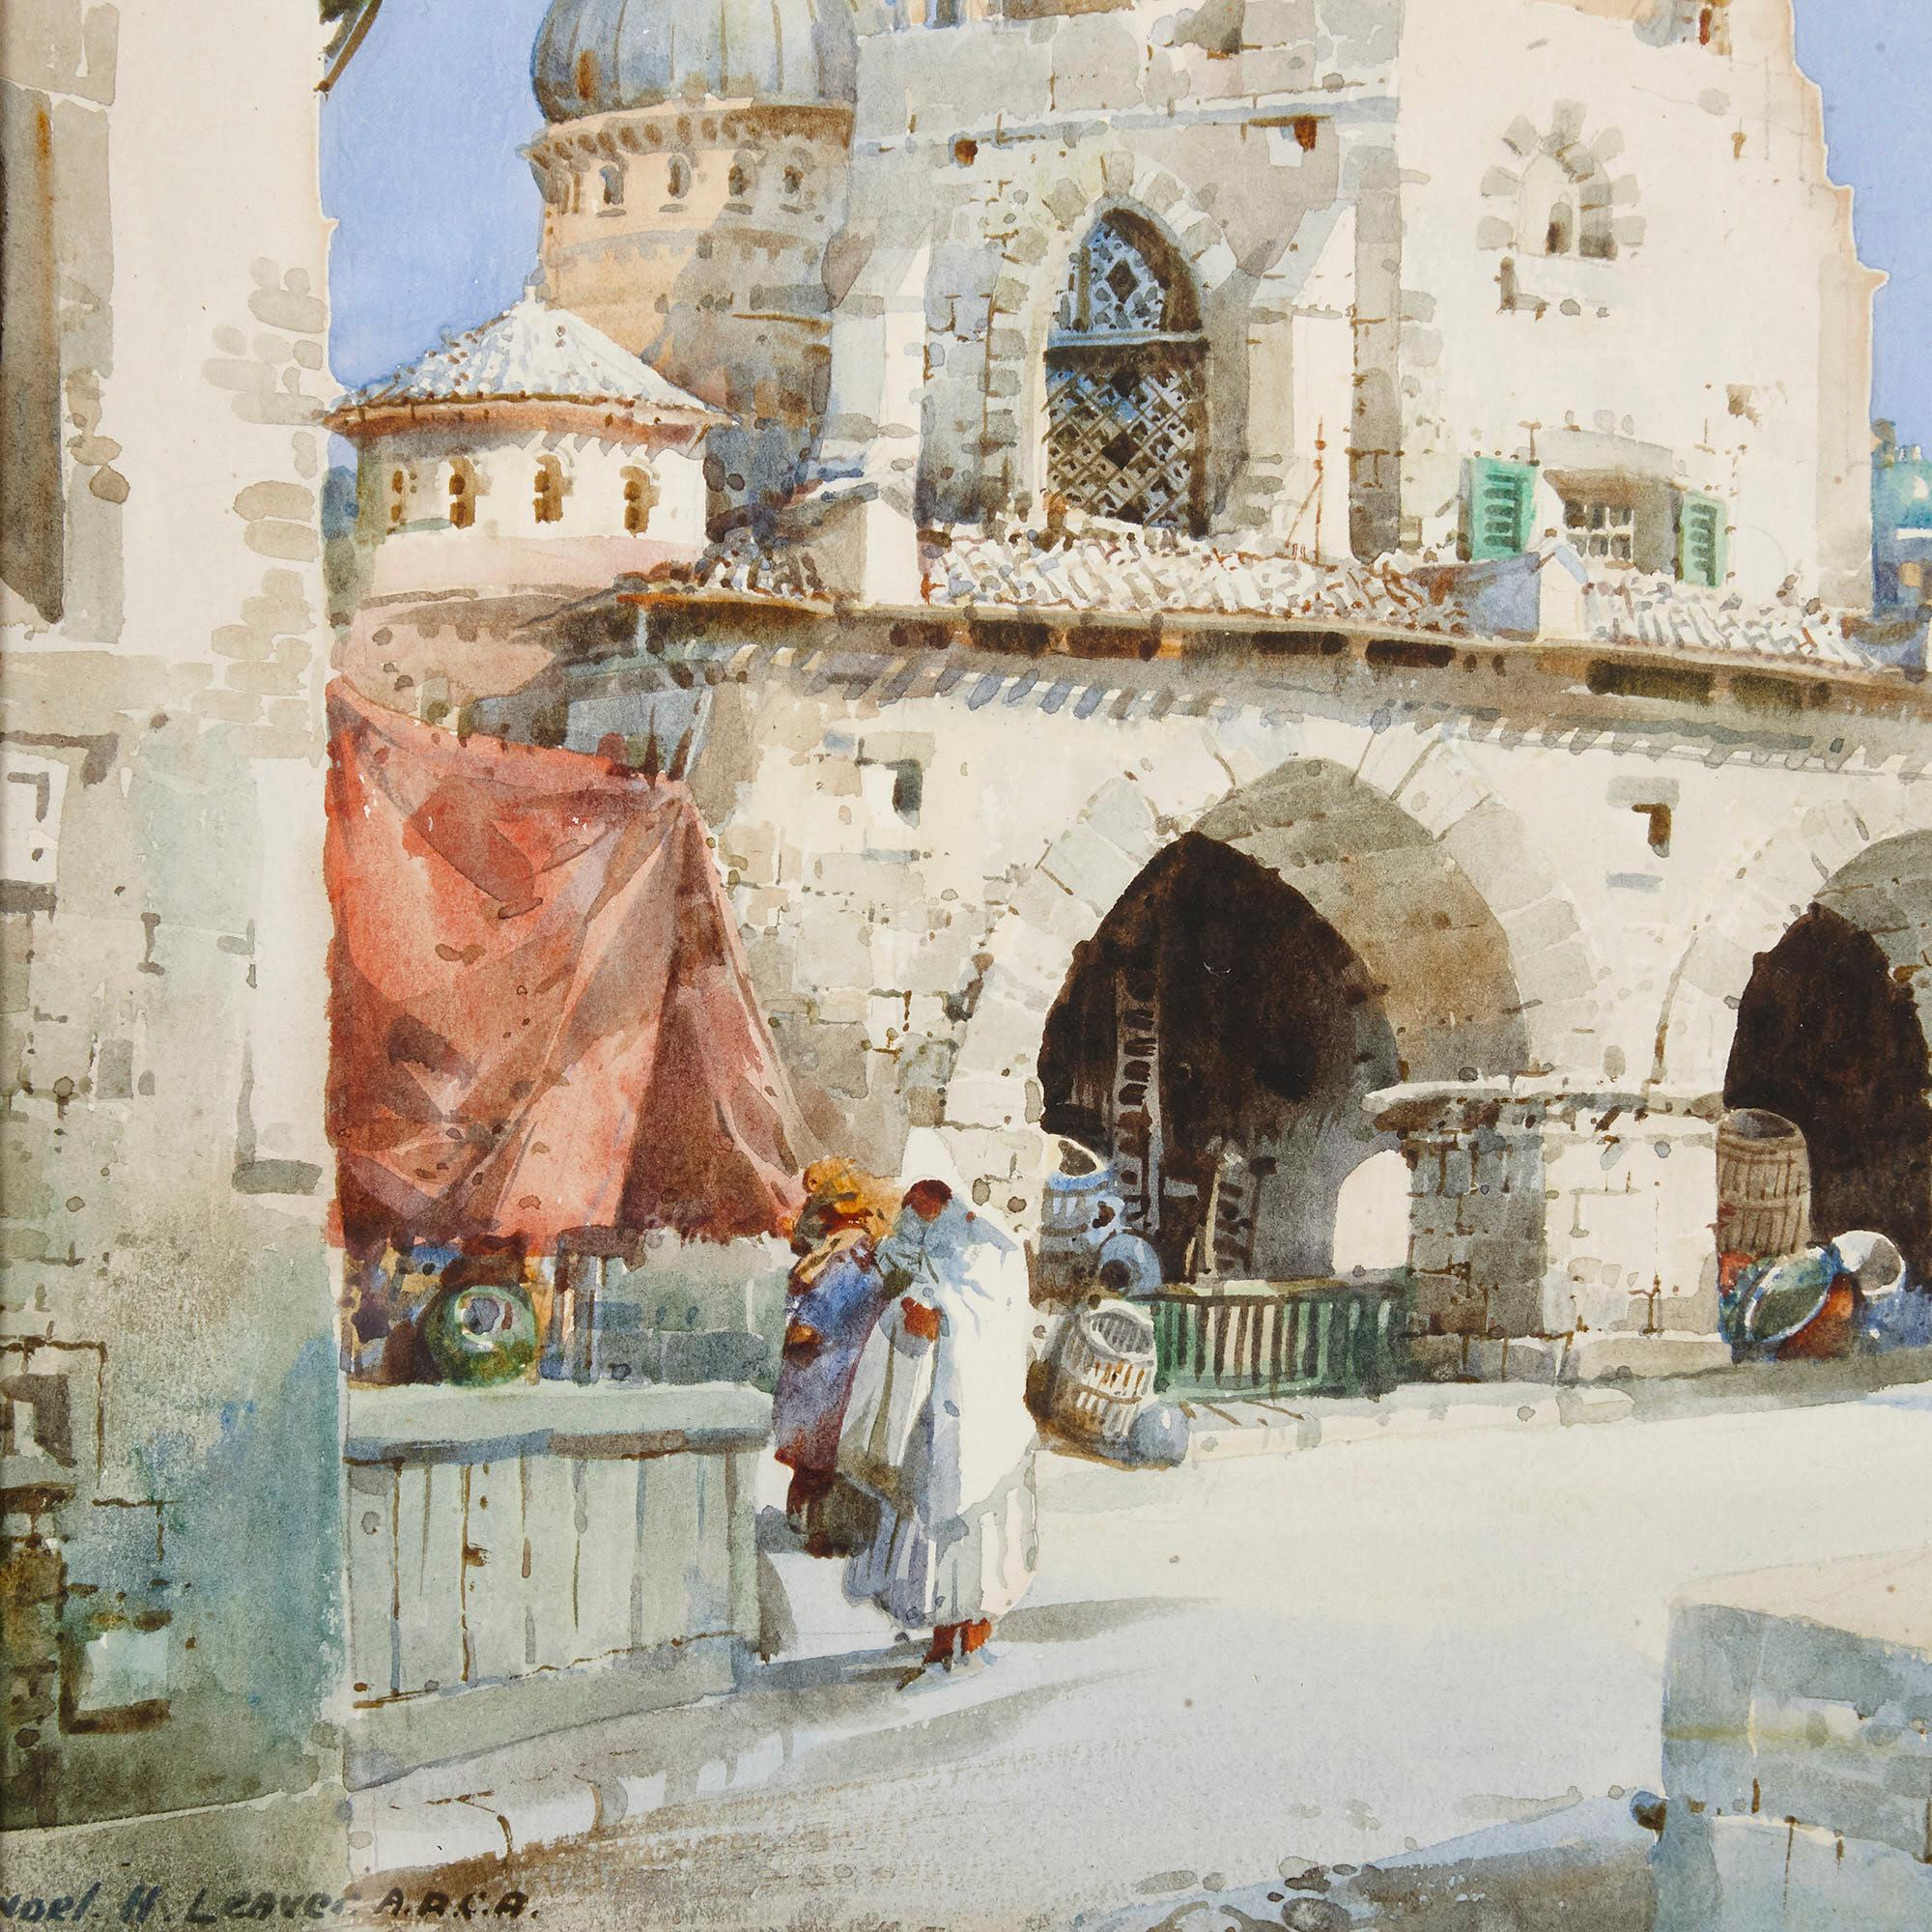 Vue orientaliste d'une mosquée par Leaver - Marron Landscape Painting par Noel Harry Leaver